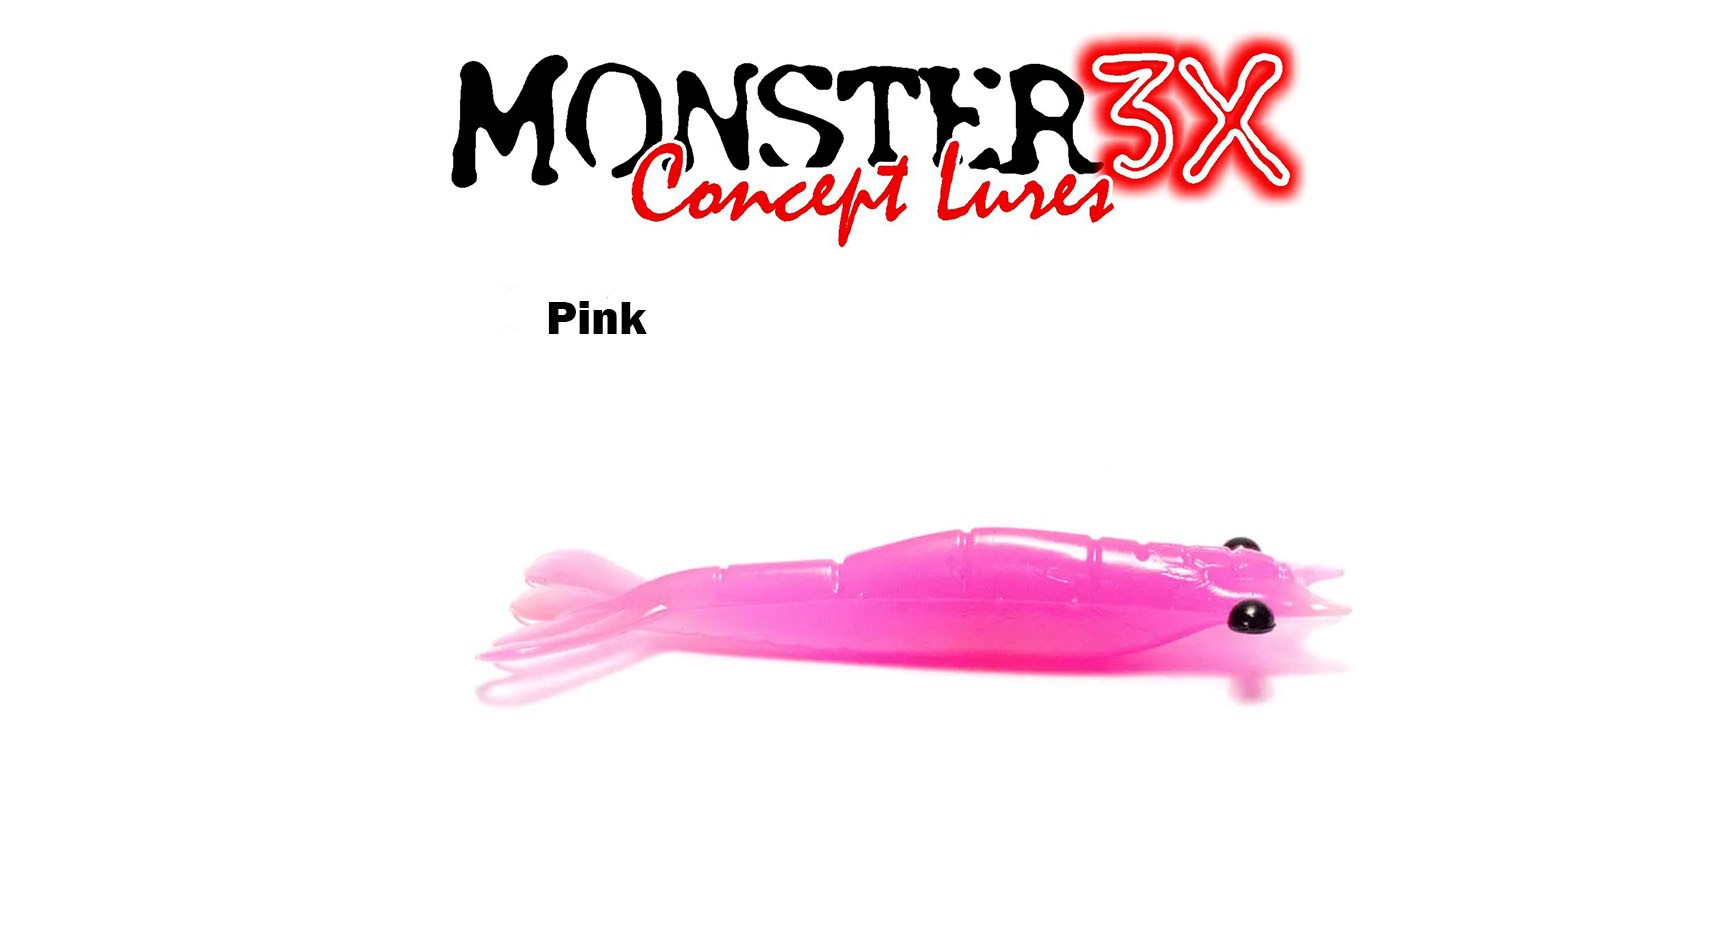 Isca Artificial Soft Monster 3X Ultra Soft (7,5 cm) 3 Unidades - Várias Cores - Life Pesca - Sua loja de Pesca, Camping e Lazer